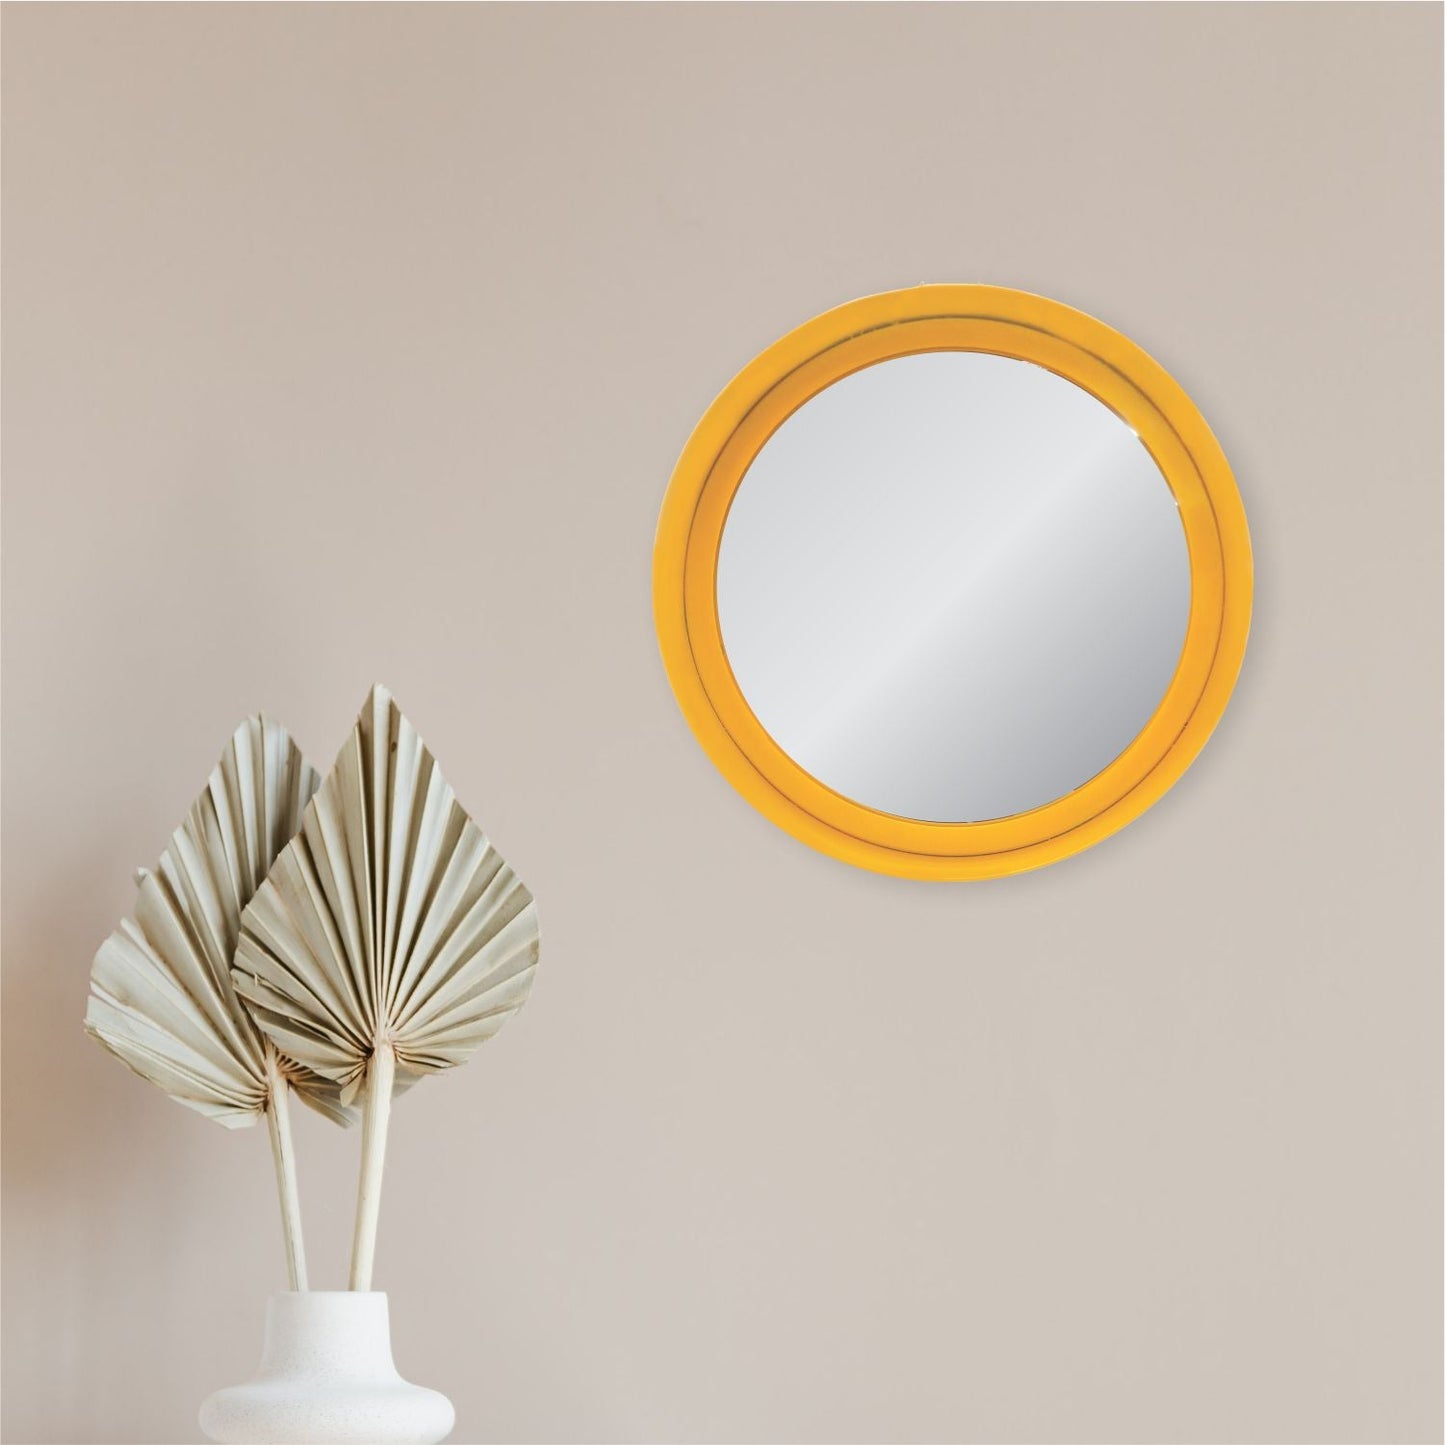 VON CASA Round Mirror, Metal Frame, Elegant Style, Modern Design, Yellow Colour, Mild Steel